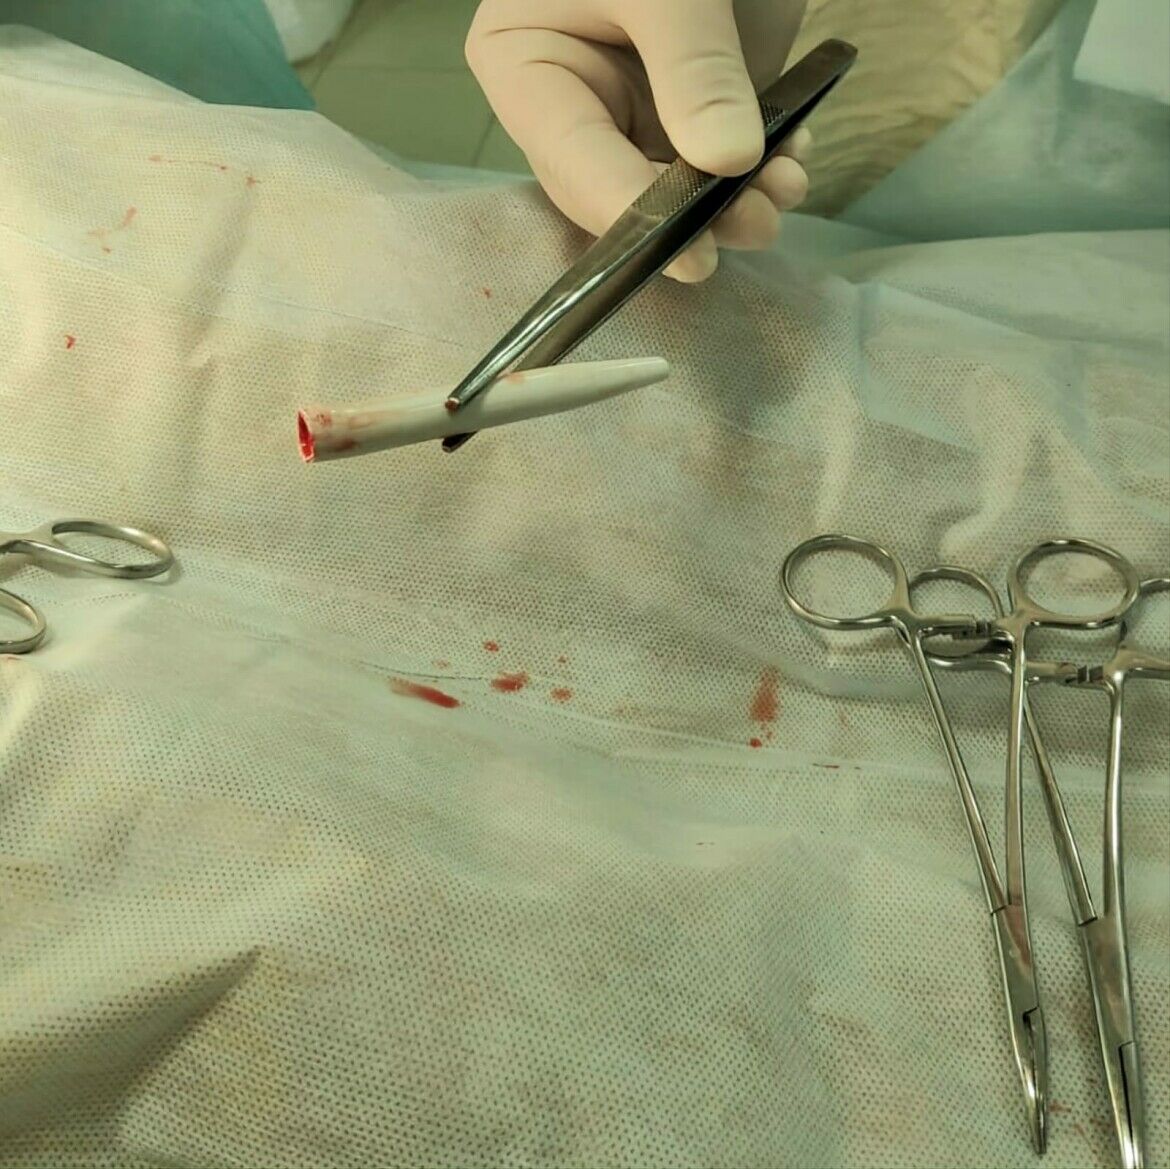 Врачи Набережных Челнов извлекли ручку из полового органа молодого пациента